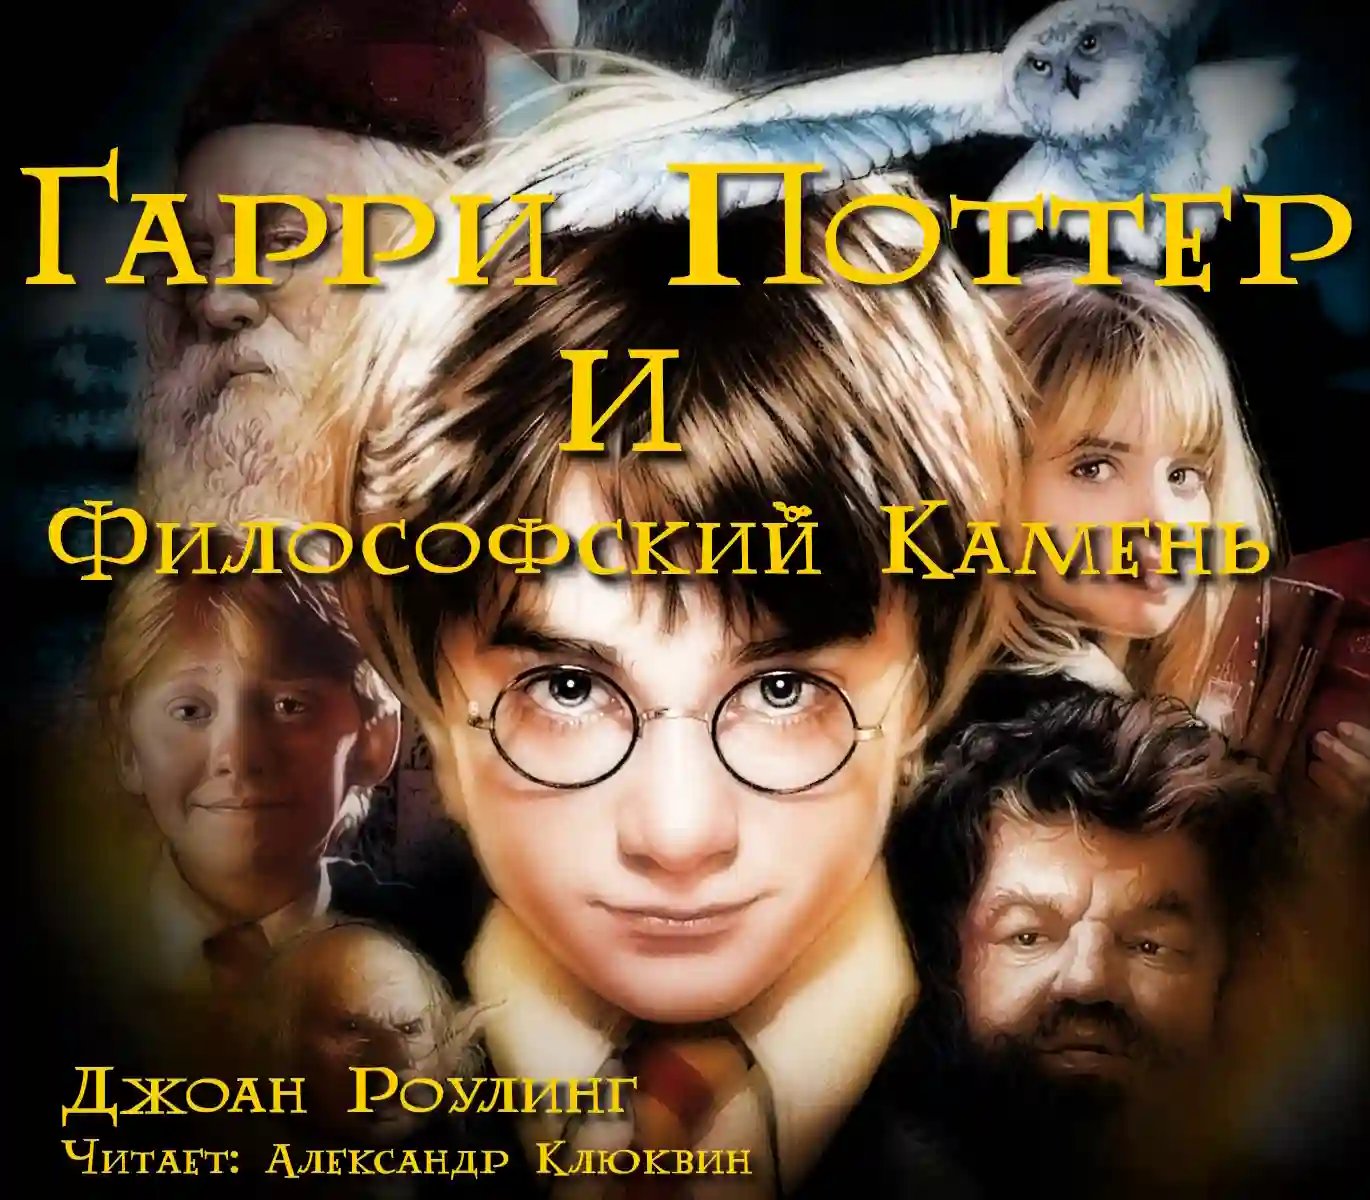 Гарри Поттер и философский камень - обложка книги